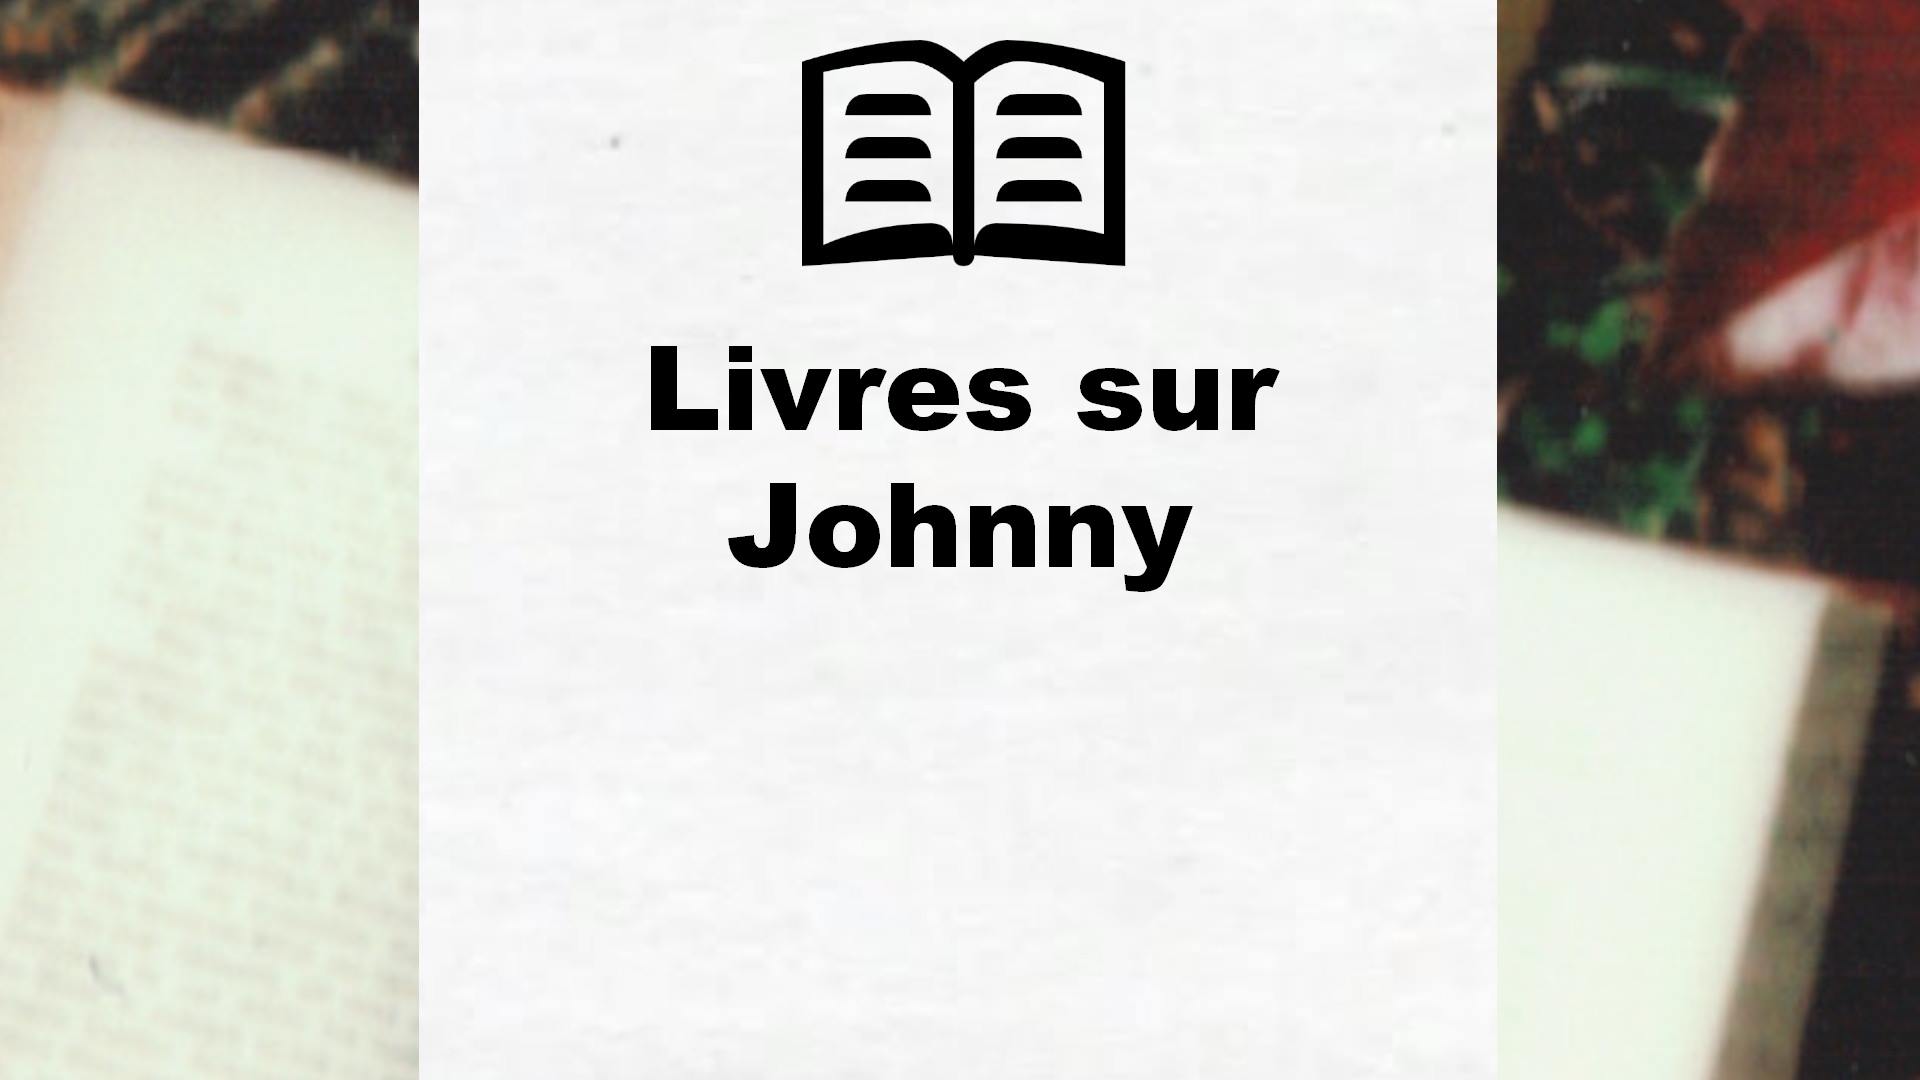 Livres sur Johnny